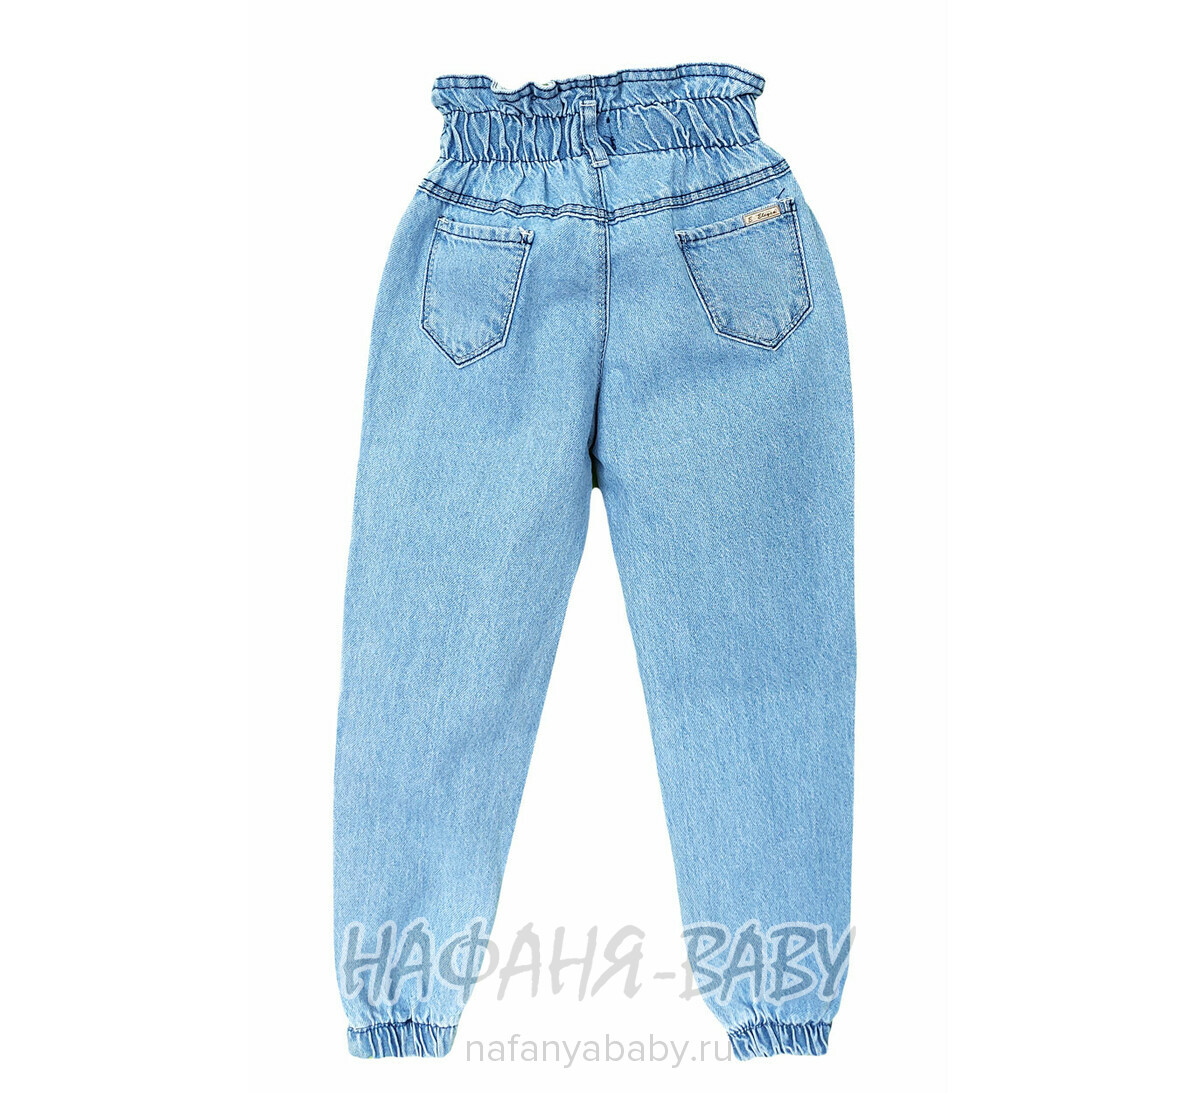 Джинсы подростковые ELEYSA Jeans арт: 6052, 13-16 лет, цвет голубой, оптом Турция